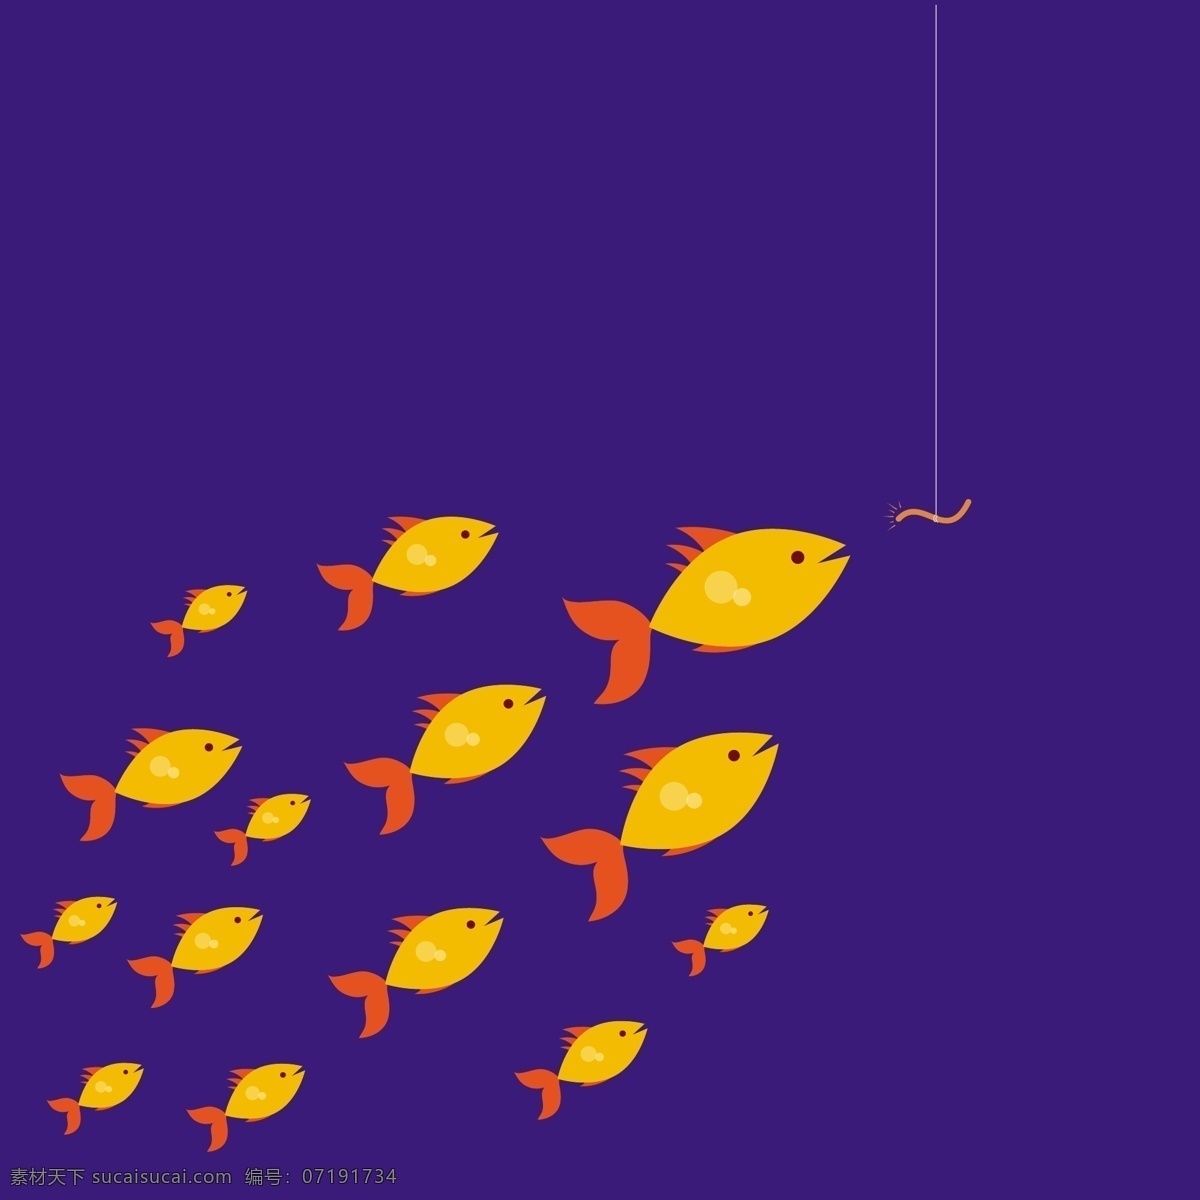 黄色鱼矢量图 广告背景 广告 背景 背景素材 底纹背景 黄色 鱼 生物 海洋 蓝色背景 底纹 蓝色底纹